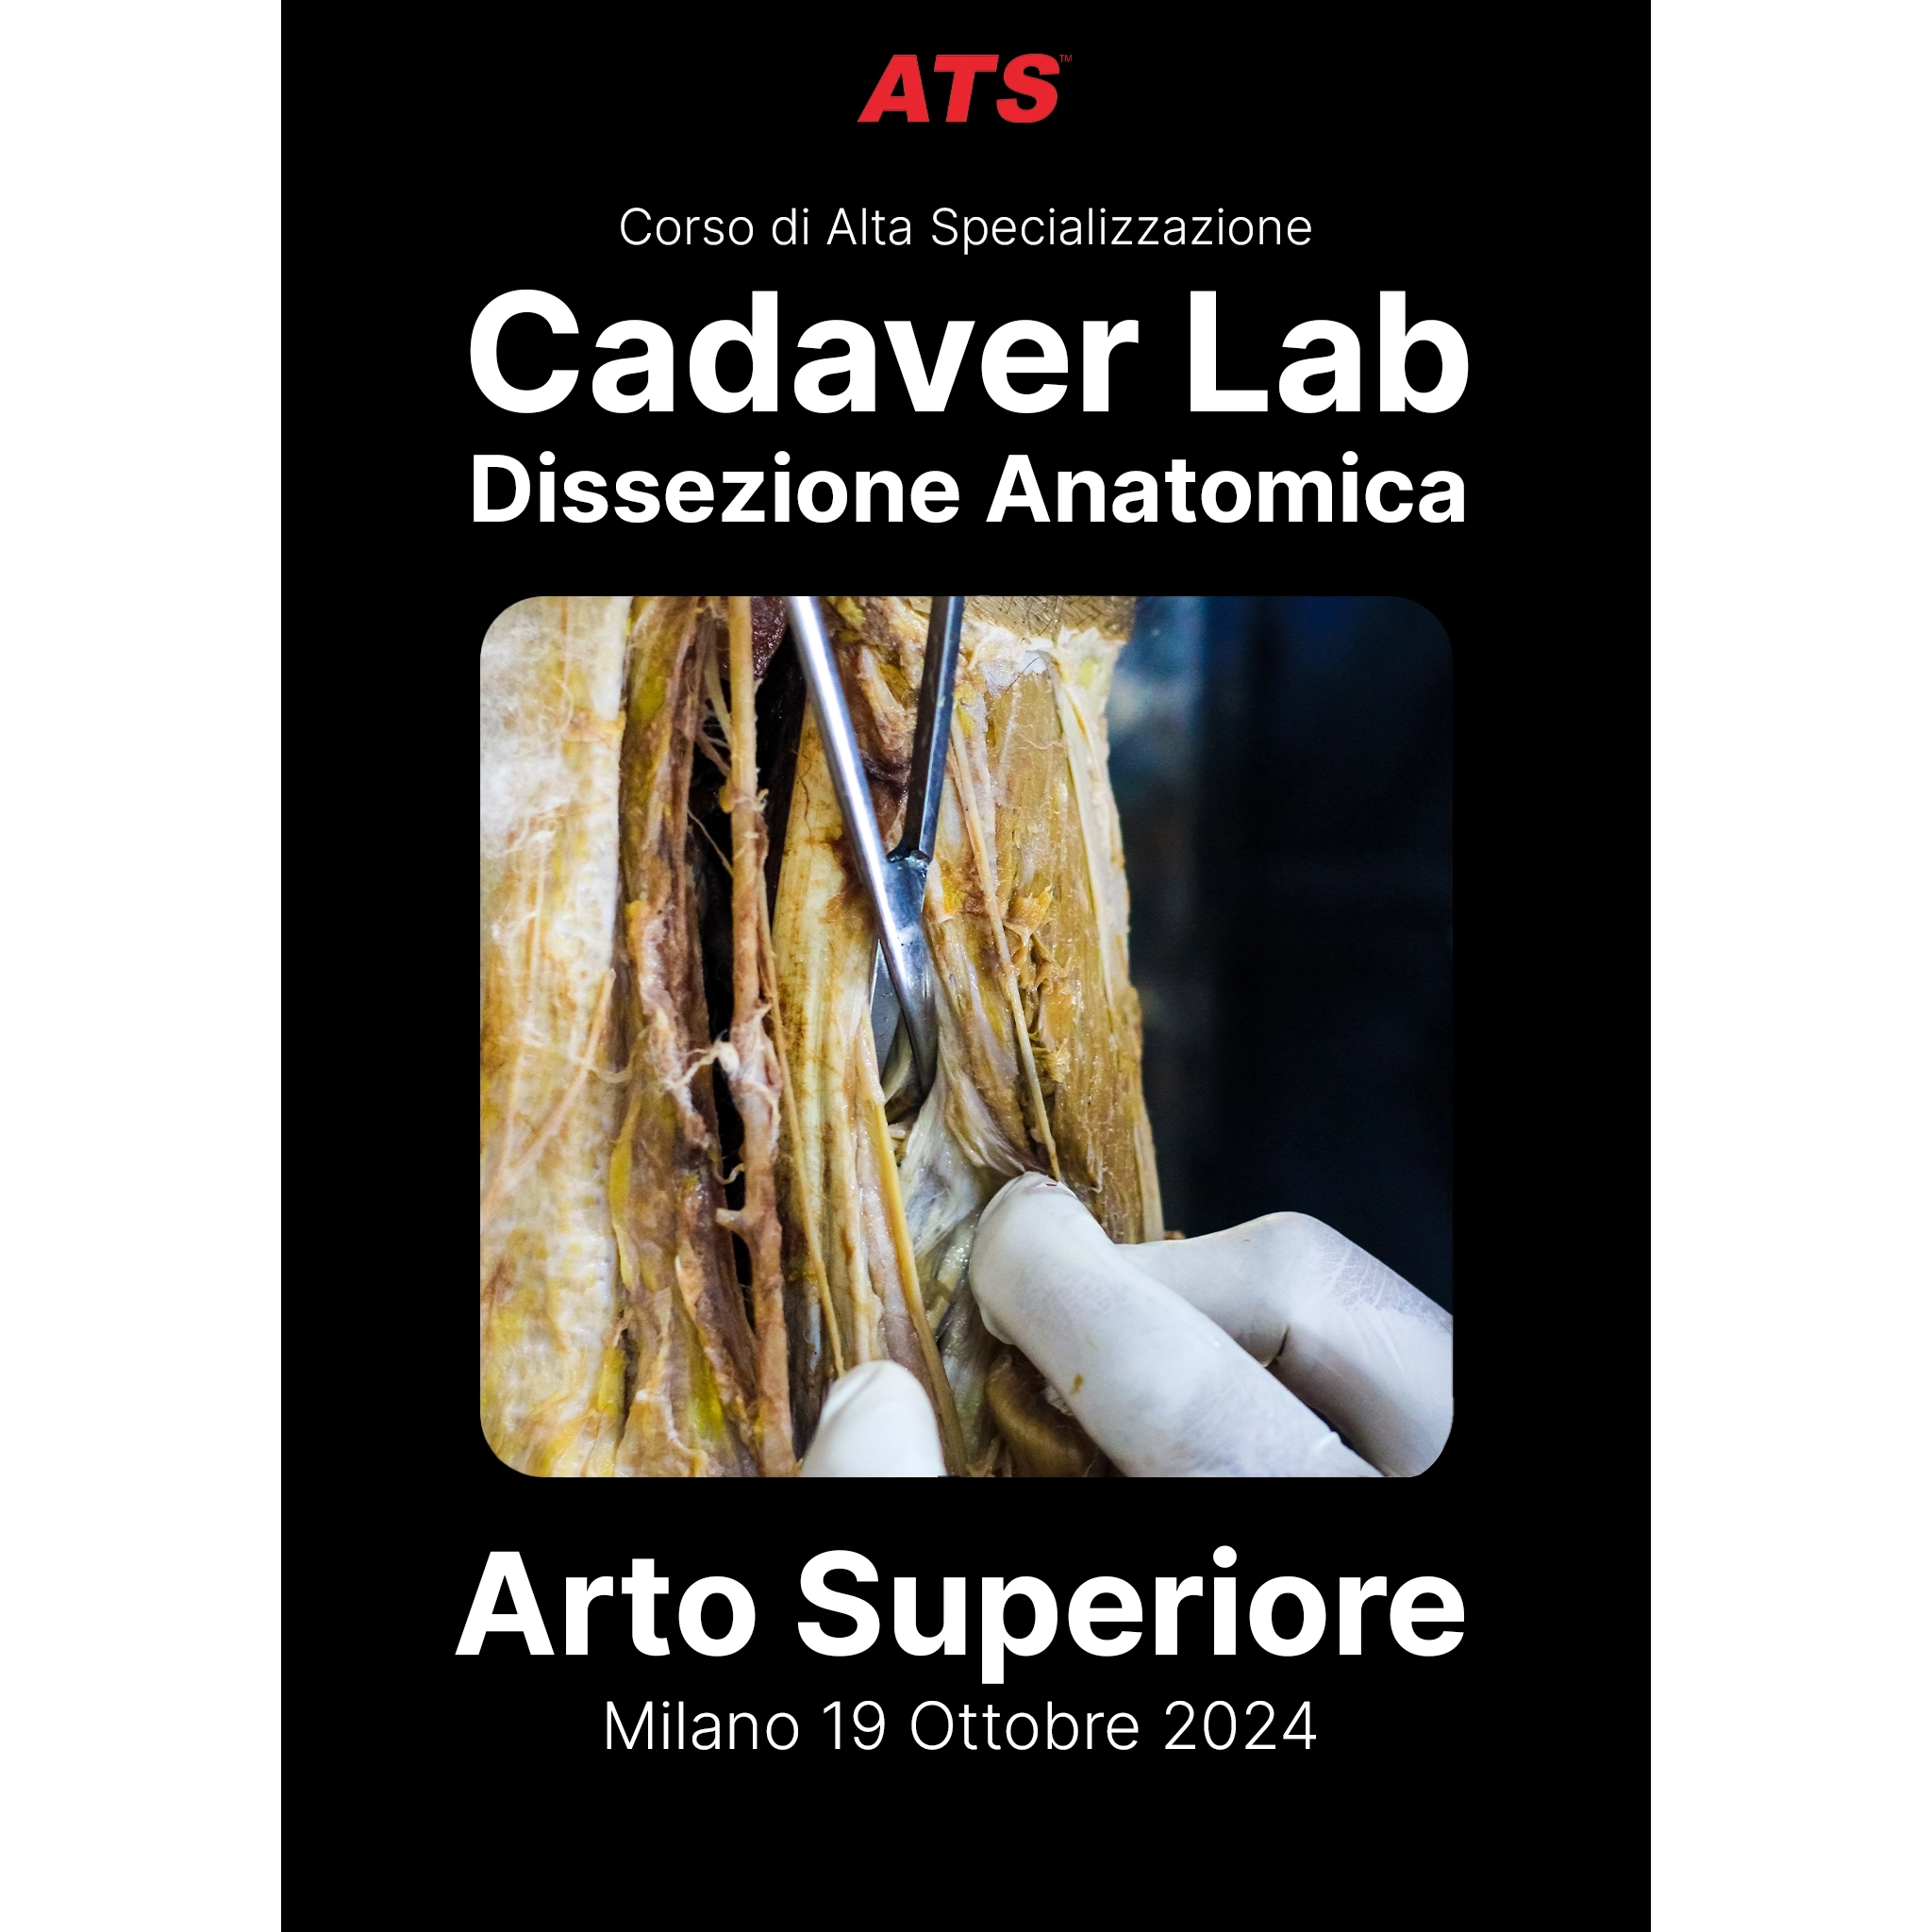 Arto-Superiore-Cadaver-Lab-ATS